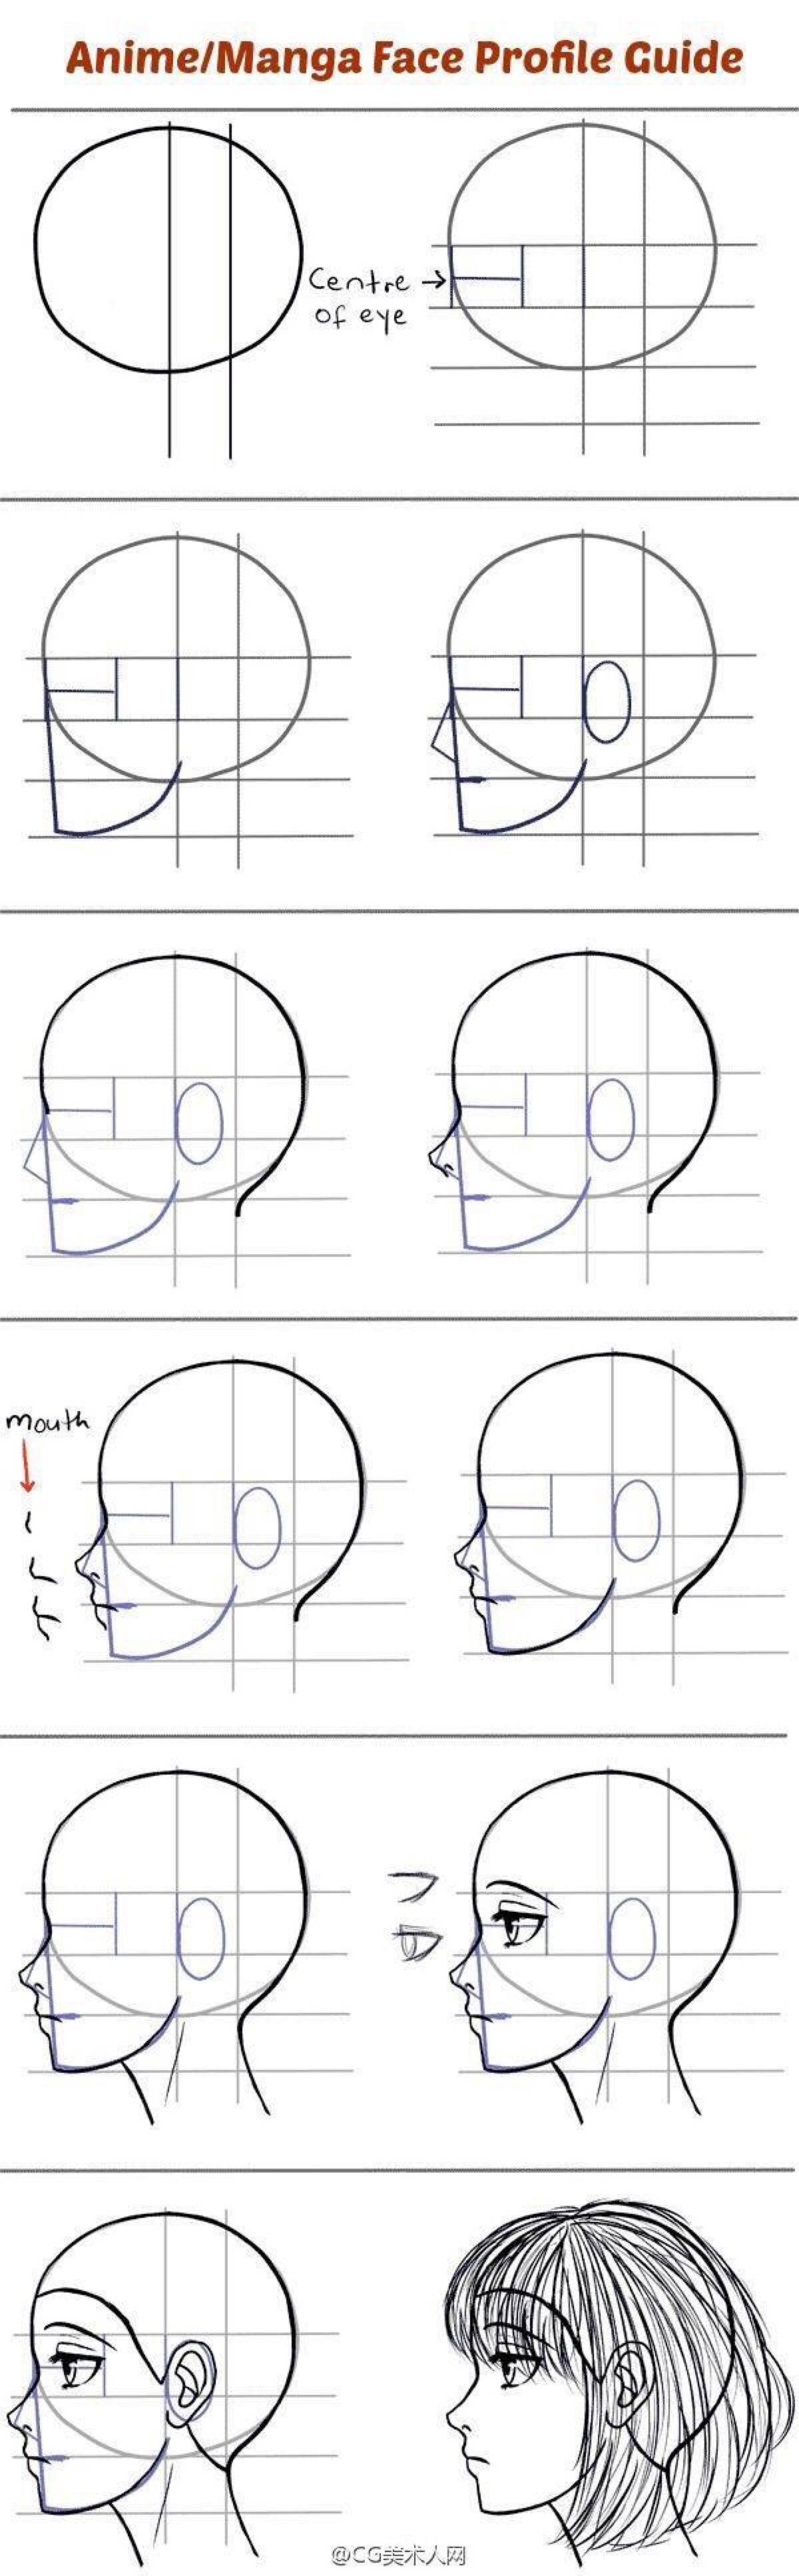 人体侧脸结构图片